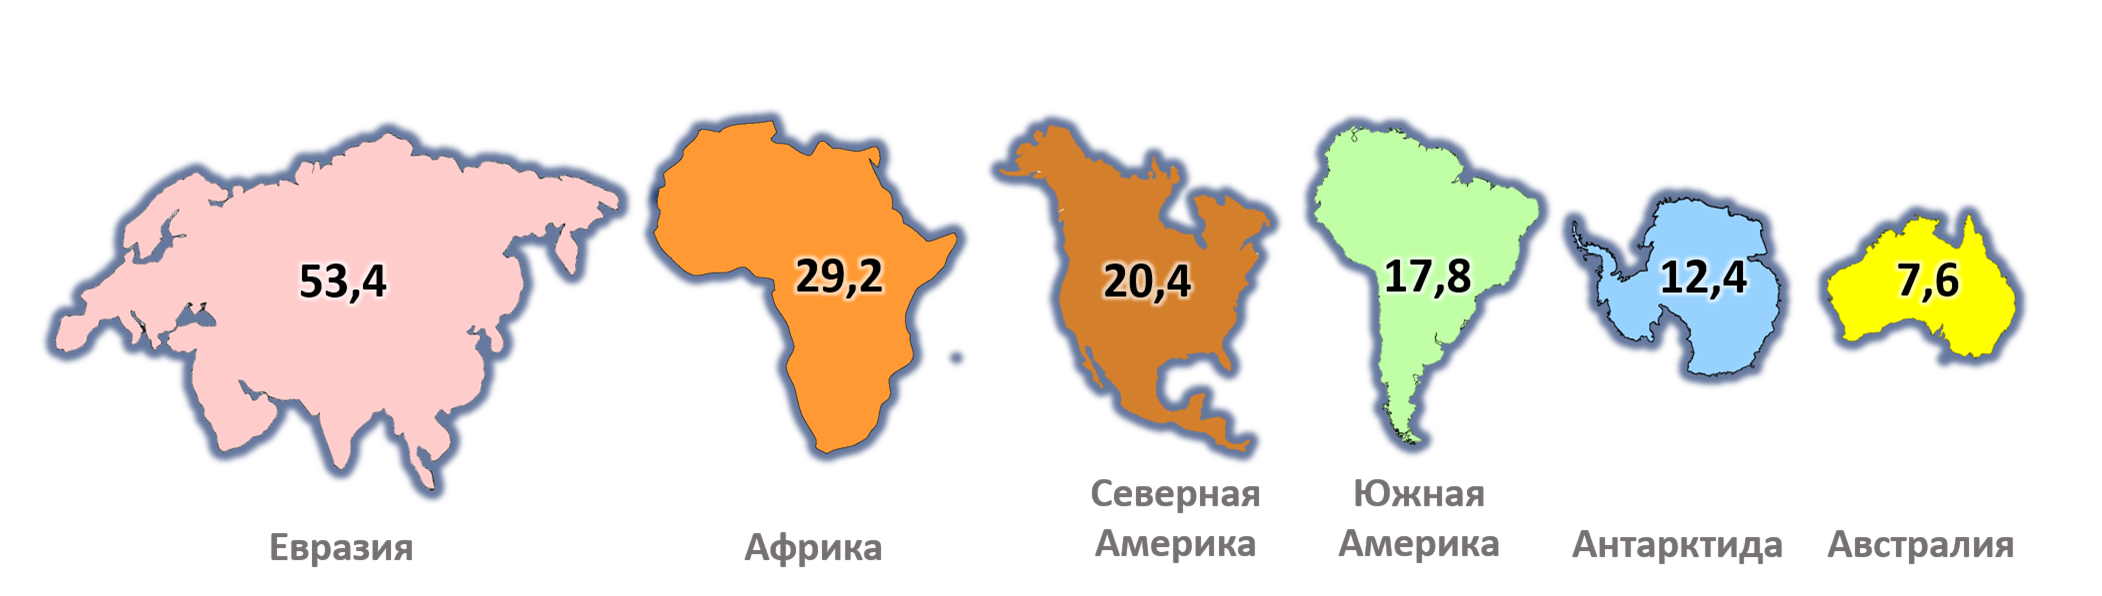 Евразия Африка Северная Америка Южная Америка Австралия Антарктида. Сравнение размеров материков на карте. Размеры материков по площади. Карта отдельных материков